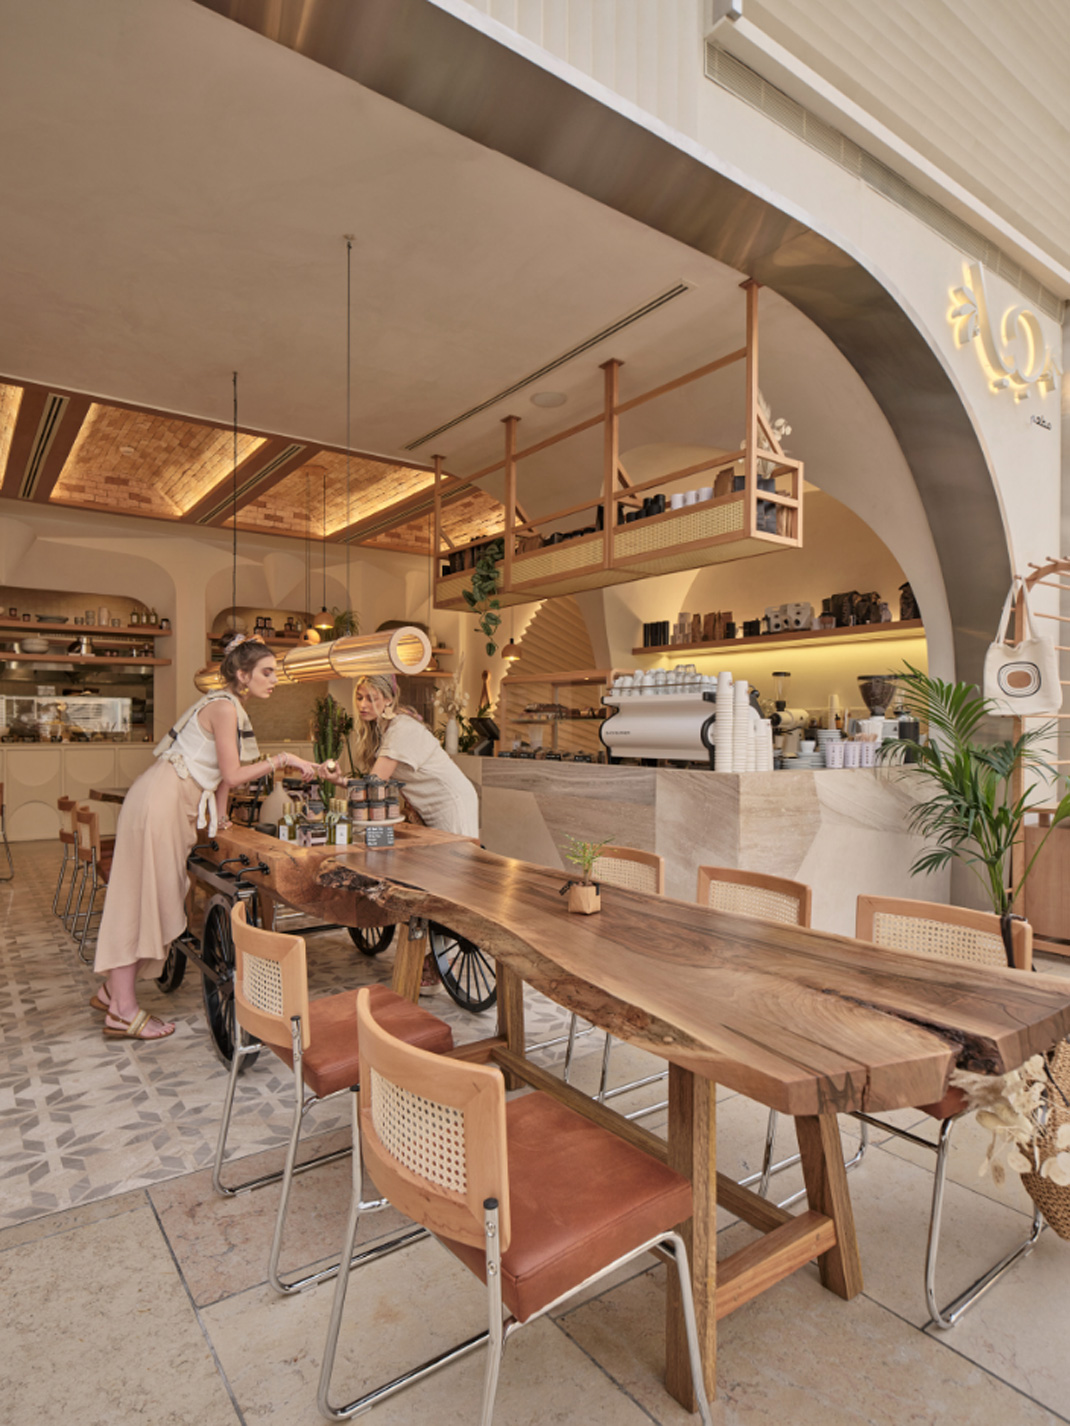 轻食餐厅GIA 特威特 轻食 街铺 异形 弧形 logo设计 vi设计 空间设计